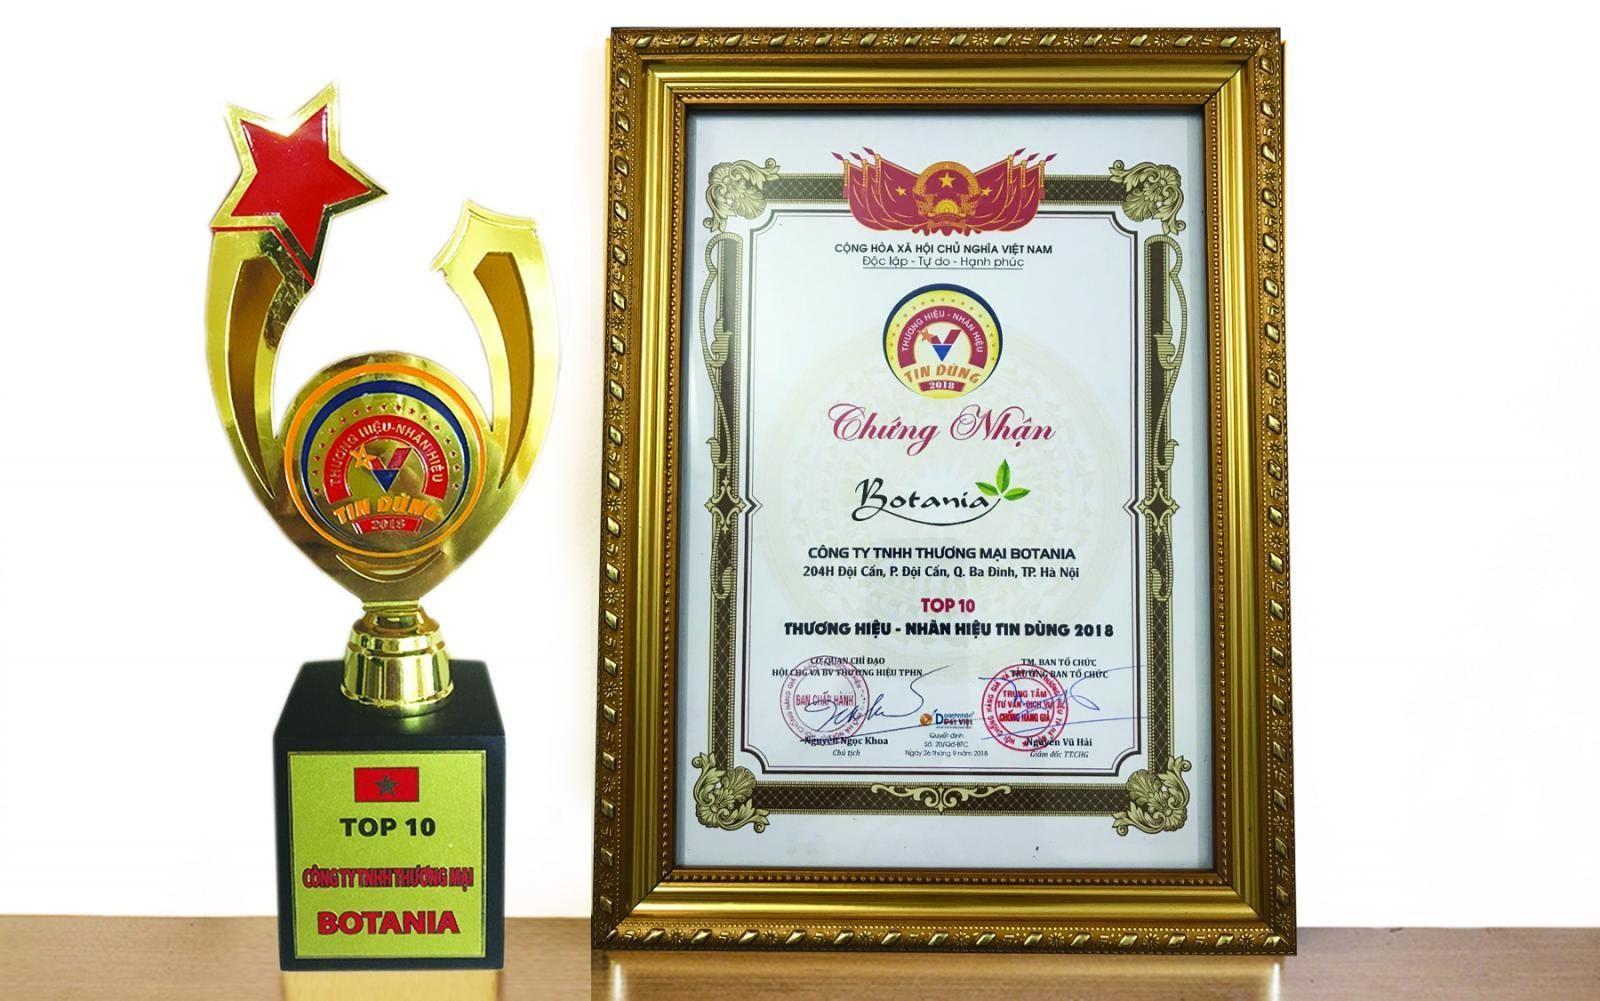 Công ty Botania đạt được nhiều giải thưởng cao quý